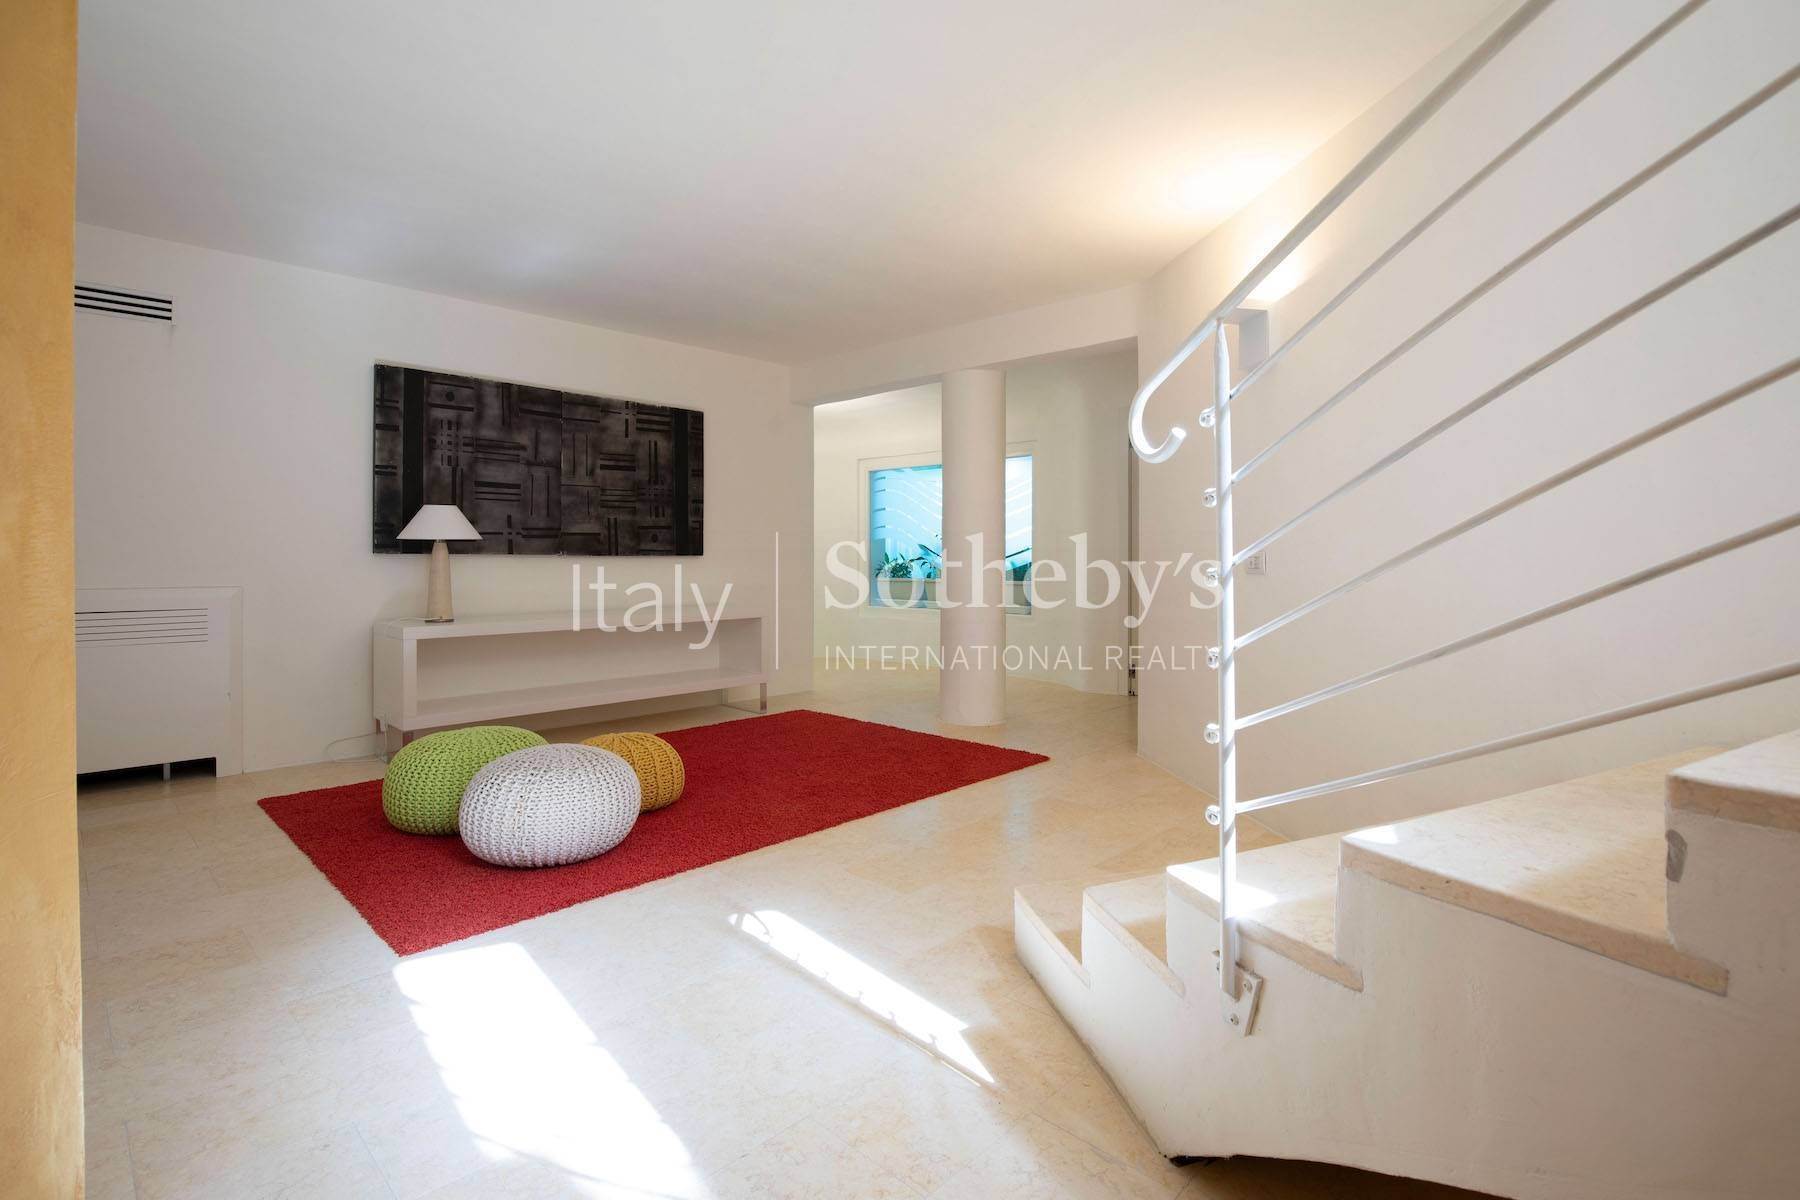 21. Single Family Homes for Sale at Amazing Villa in the center of Porto Cervo Porto Cervo, Sassari Italy